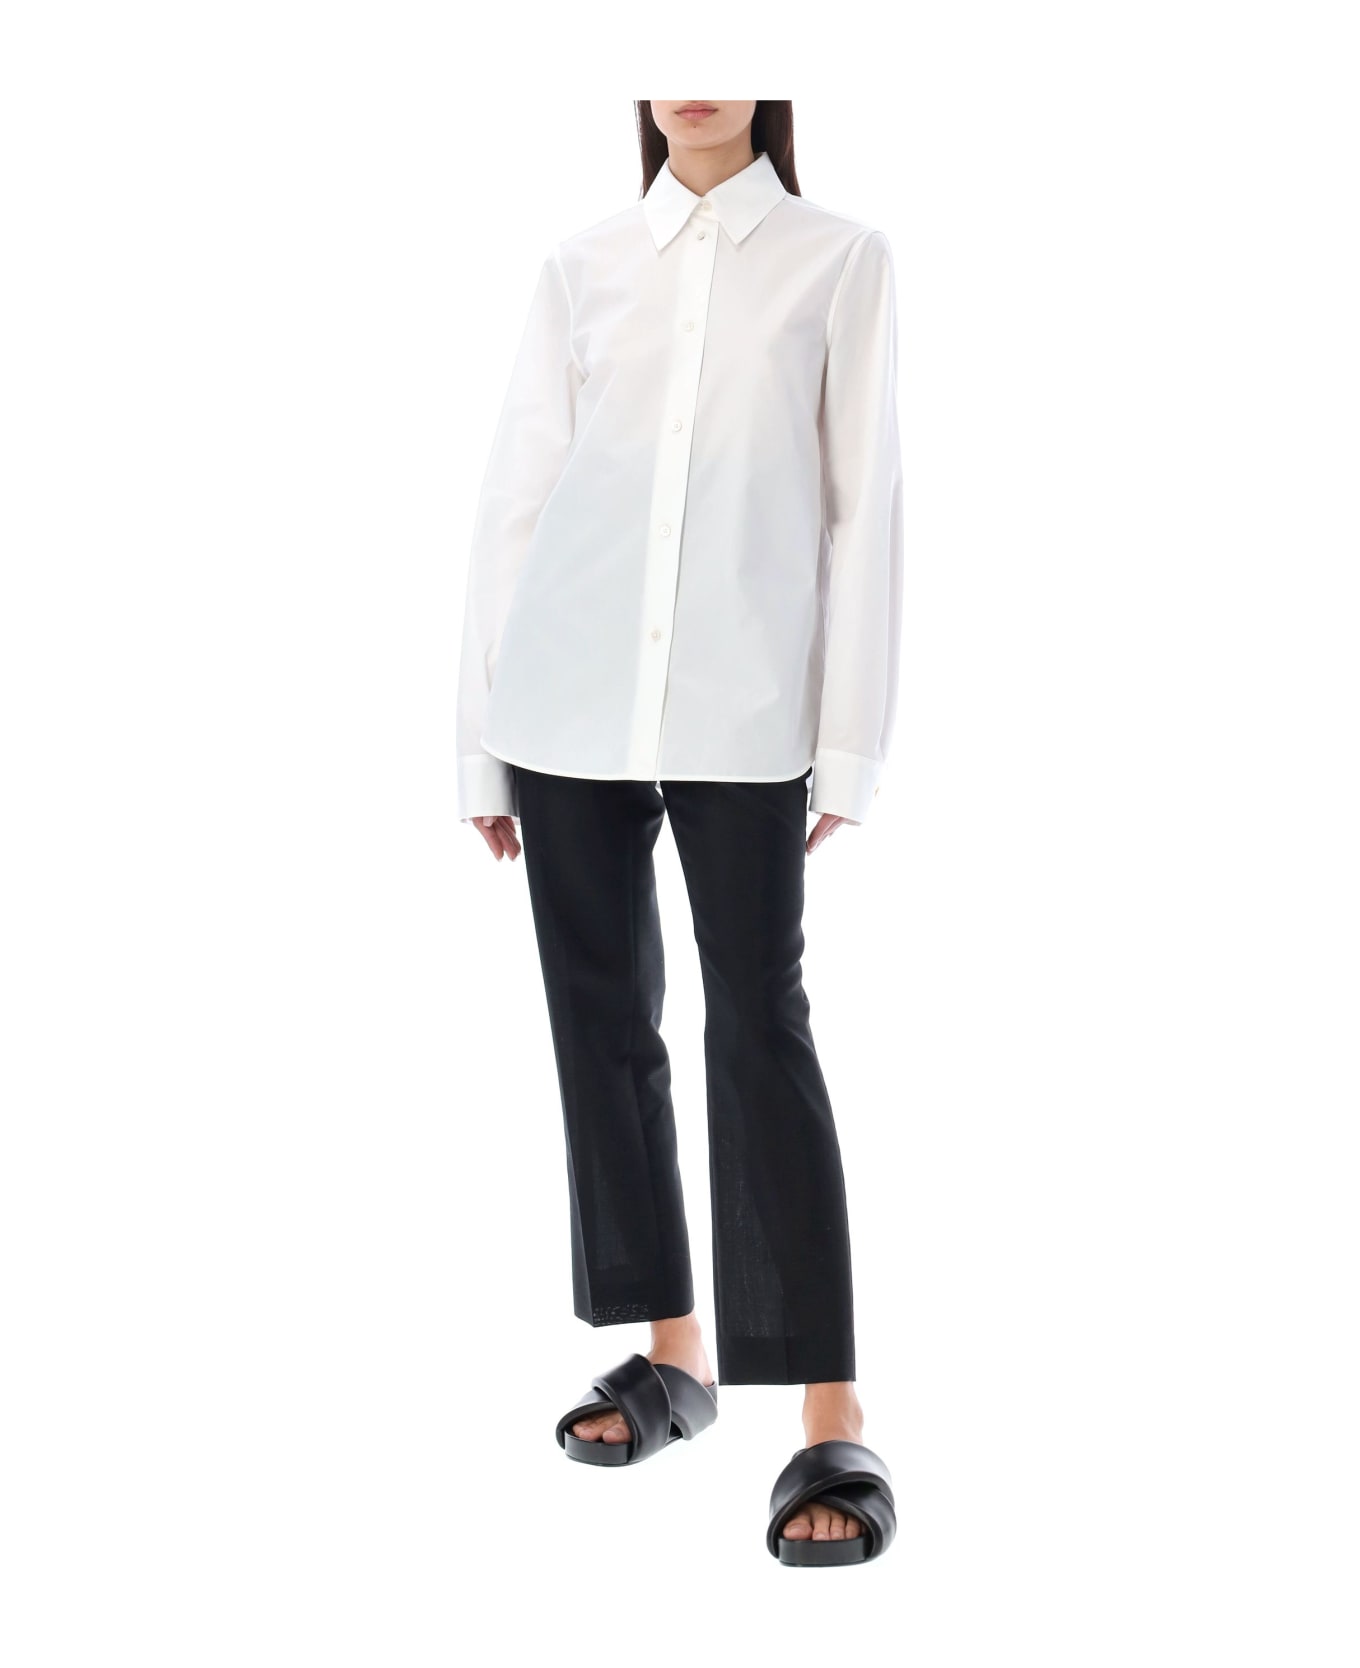 Jil Sander Cotton Poplin Shirt - White